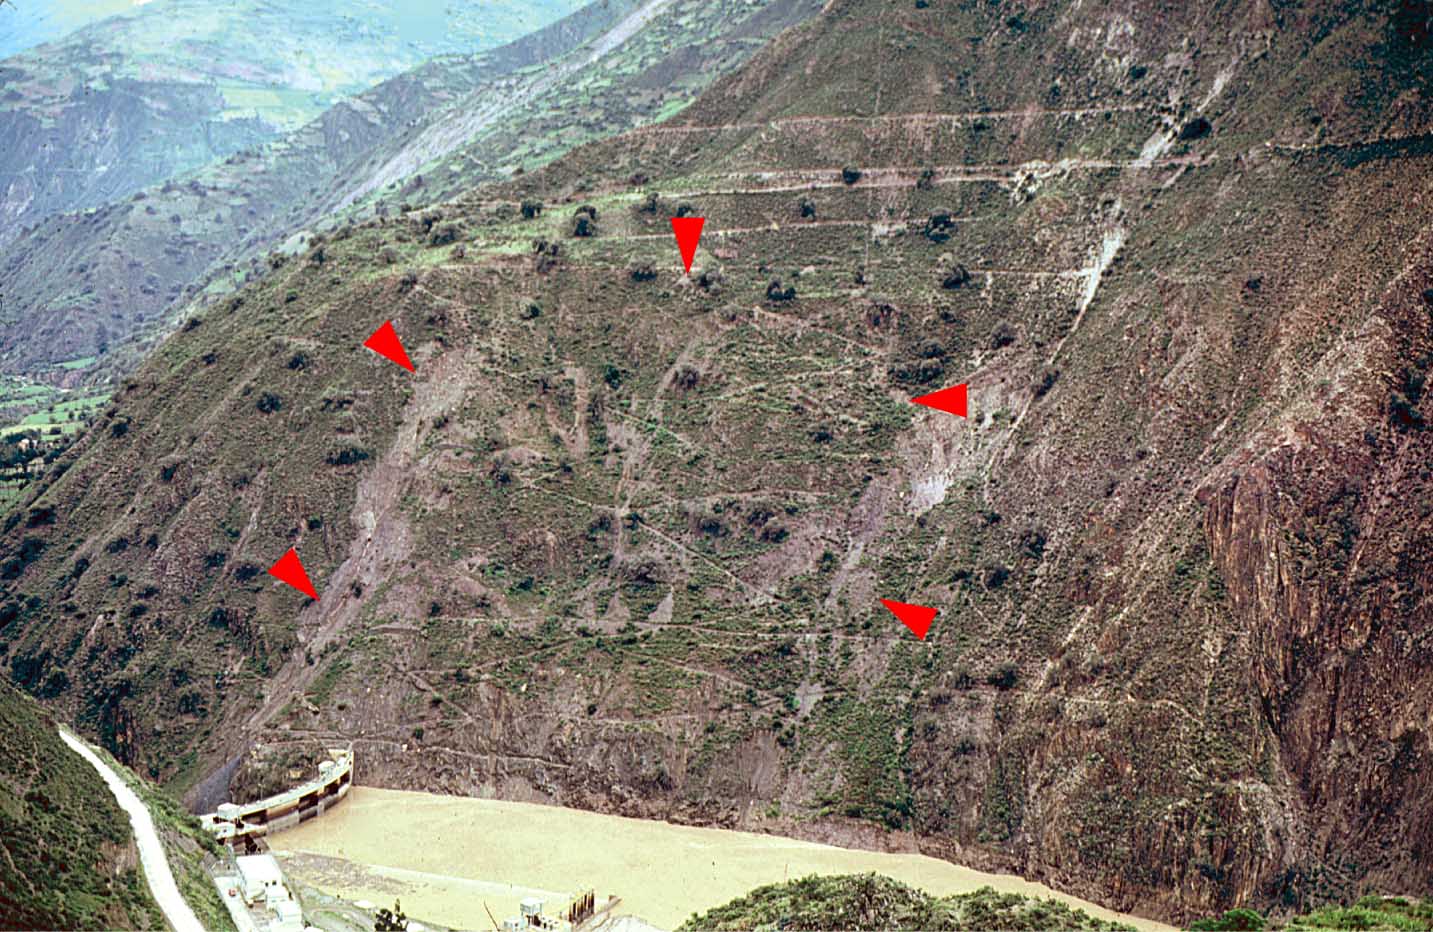 Рис.&nbsp;4. Смещение активизировавшейся части древнего оползня (указанное красными стрелками), ставившее под угрозу плотину и электростанцию Таблачака на реке Рио-Мантаро в Перу до принятия дорогостоящих контрольных мер [29, 32]